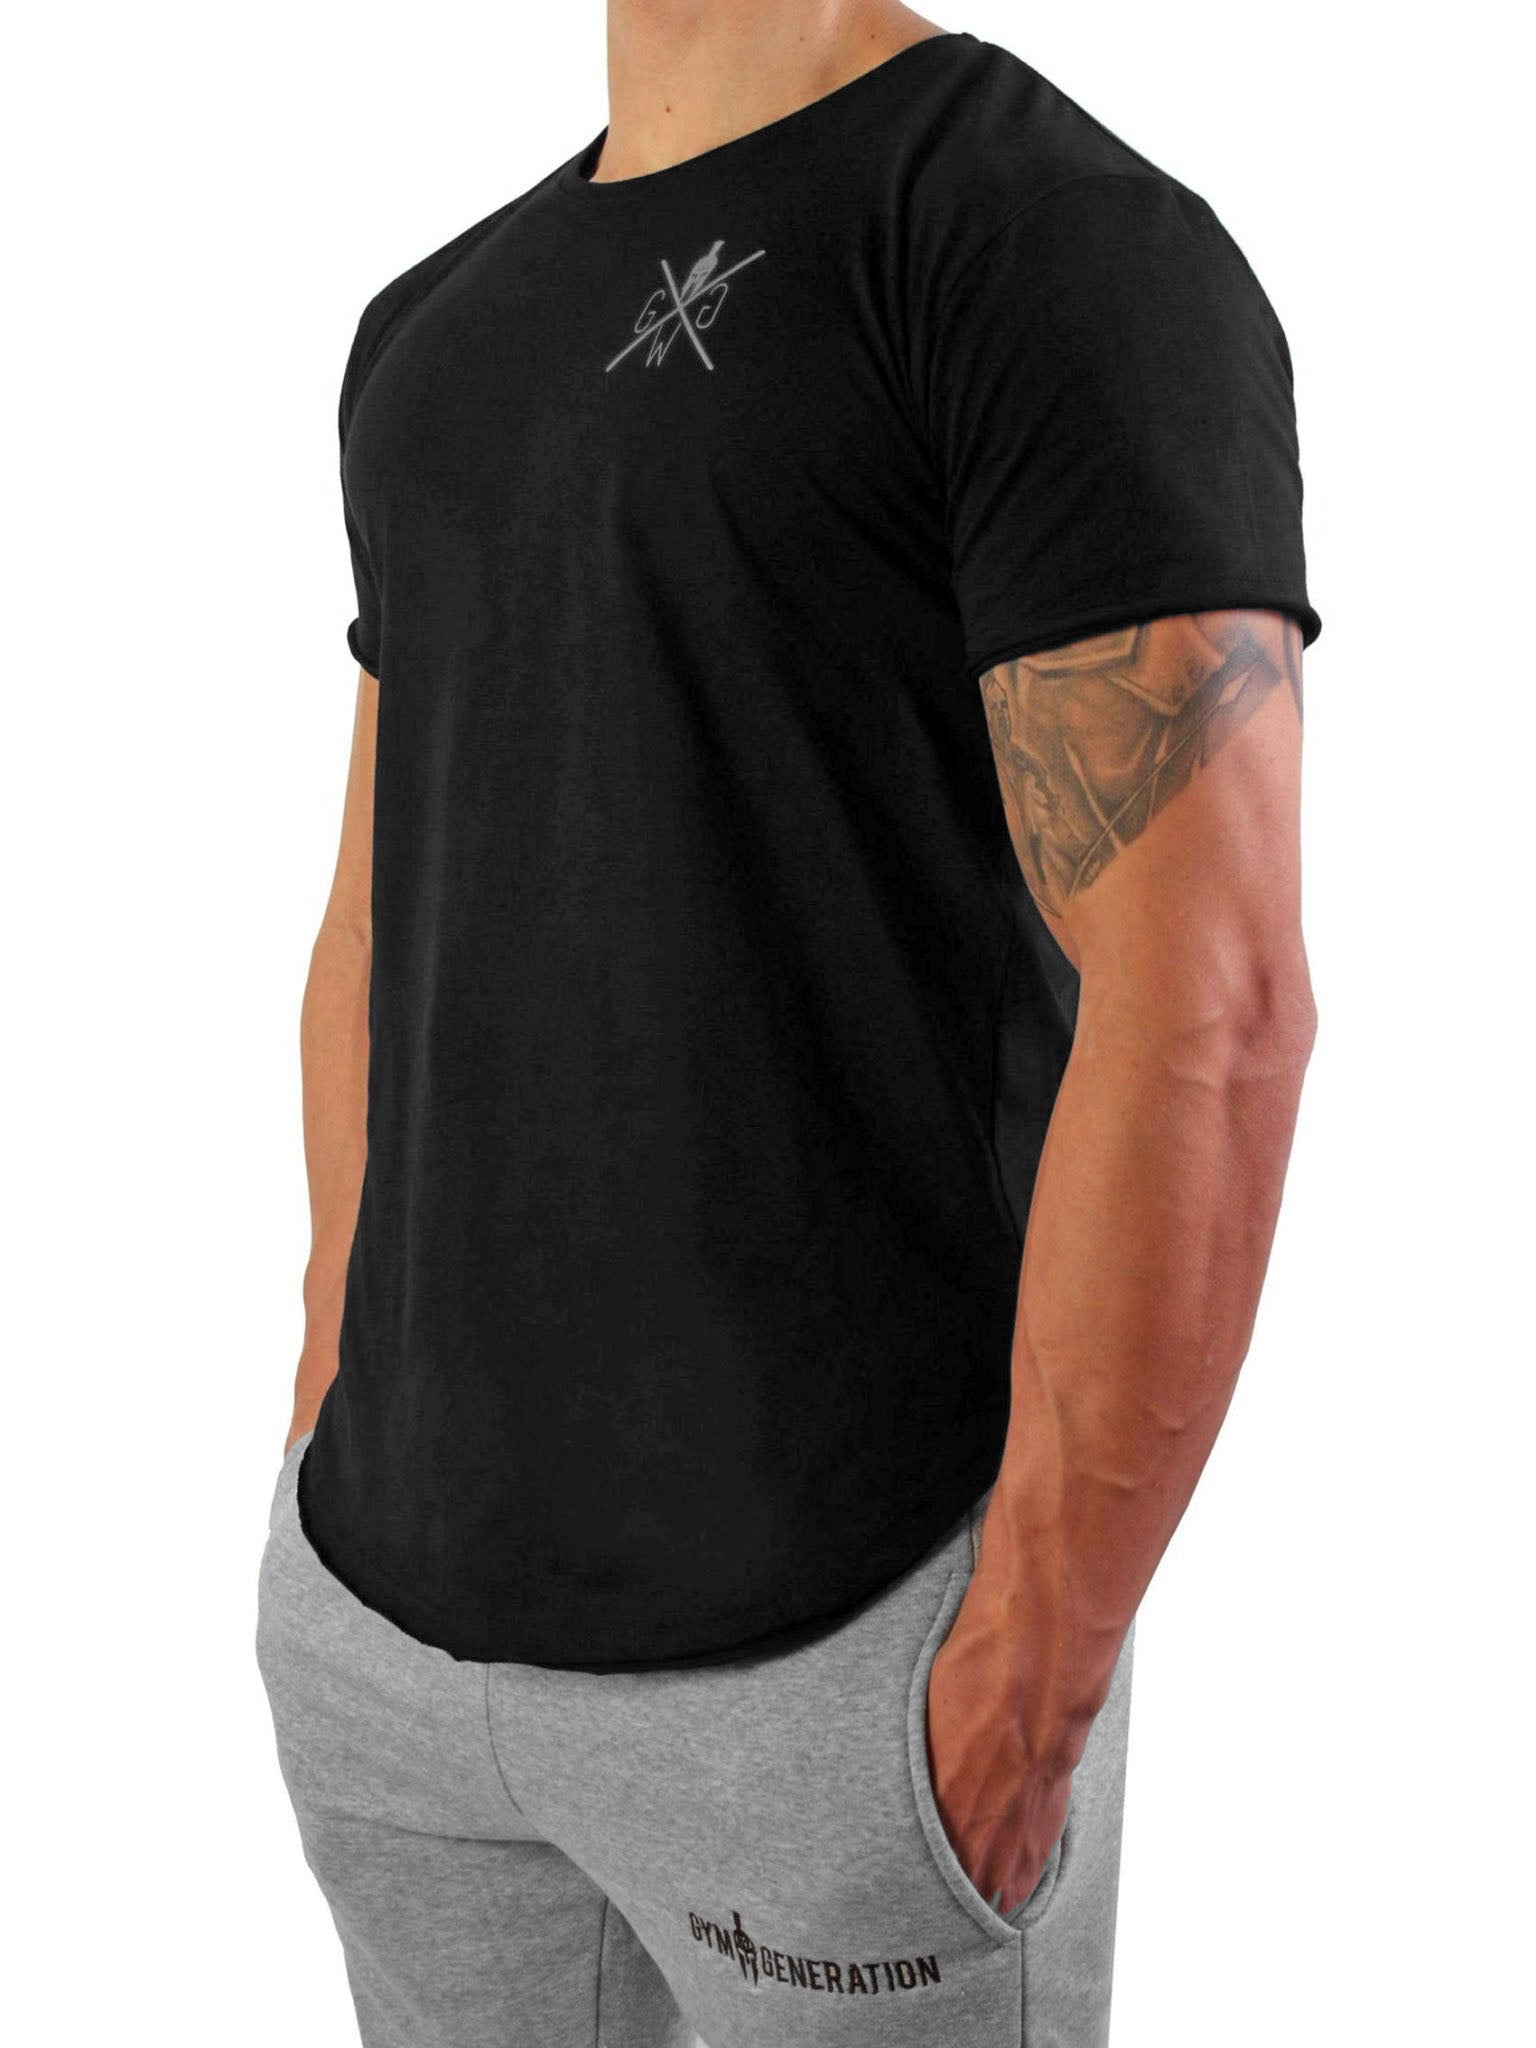 Hochwertiges "No Pain No Gain" Gym T-Shirt für Herren, zeigt deine Entschlossenheit beim Training.